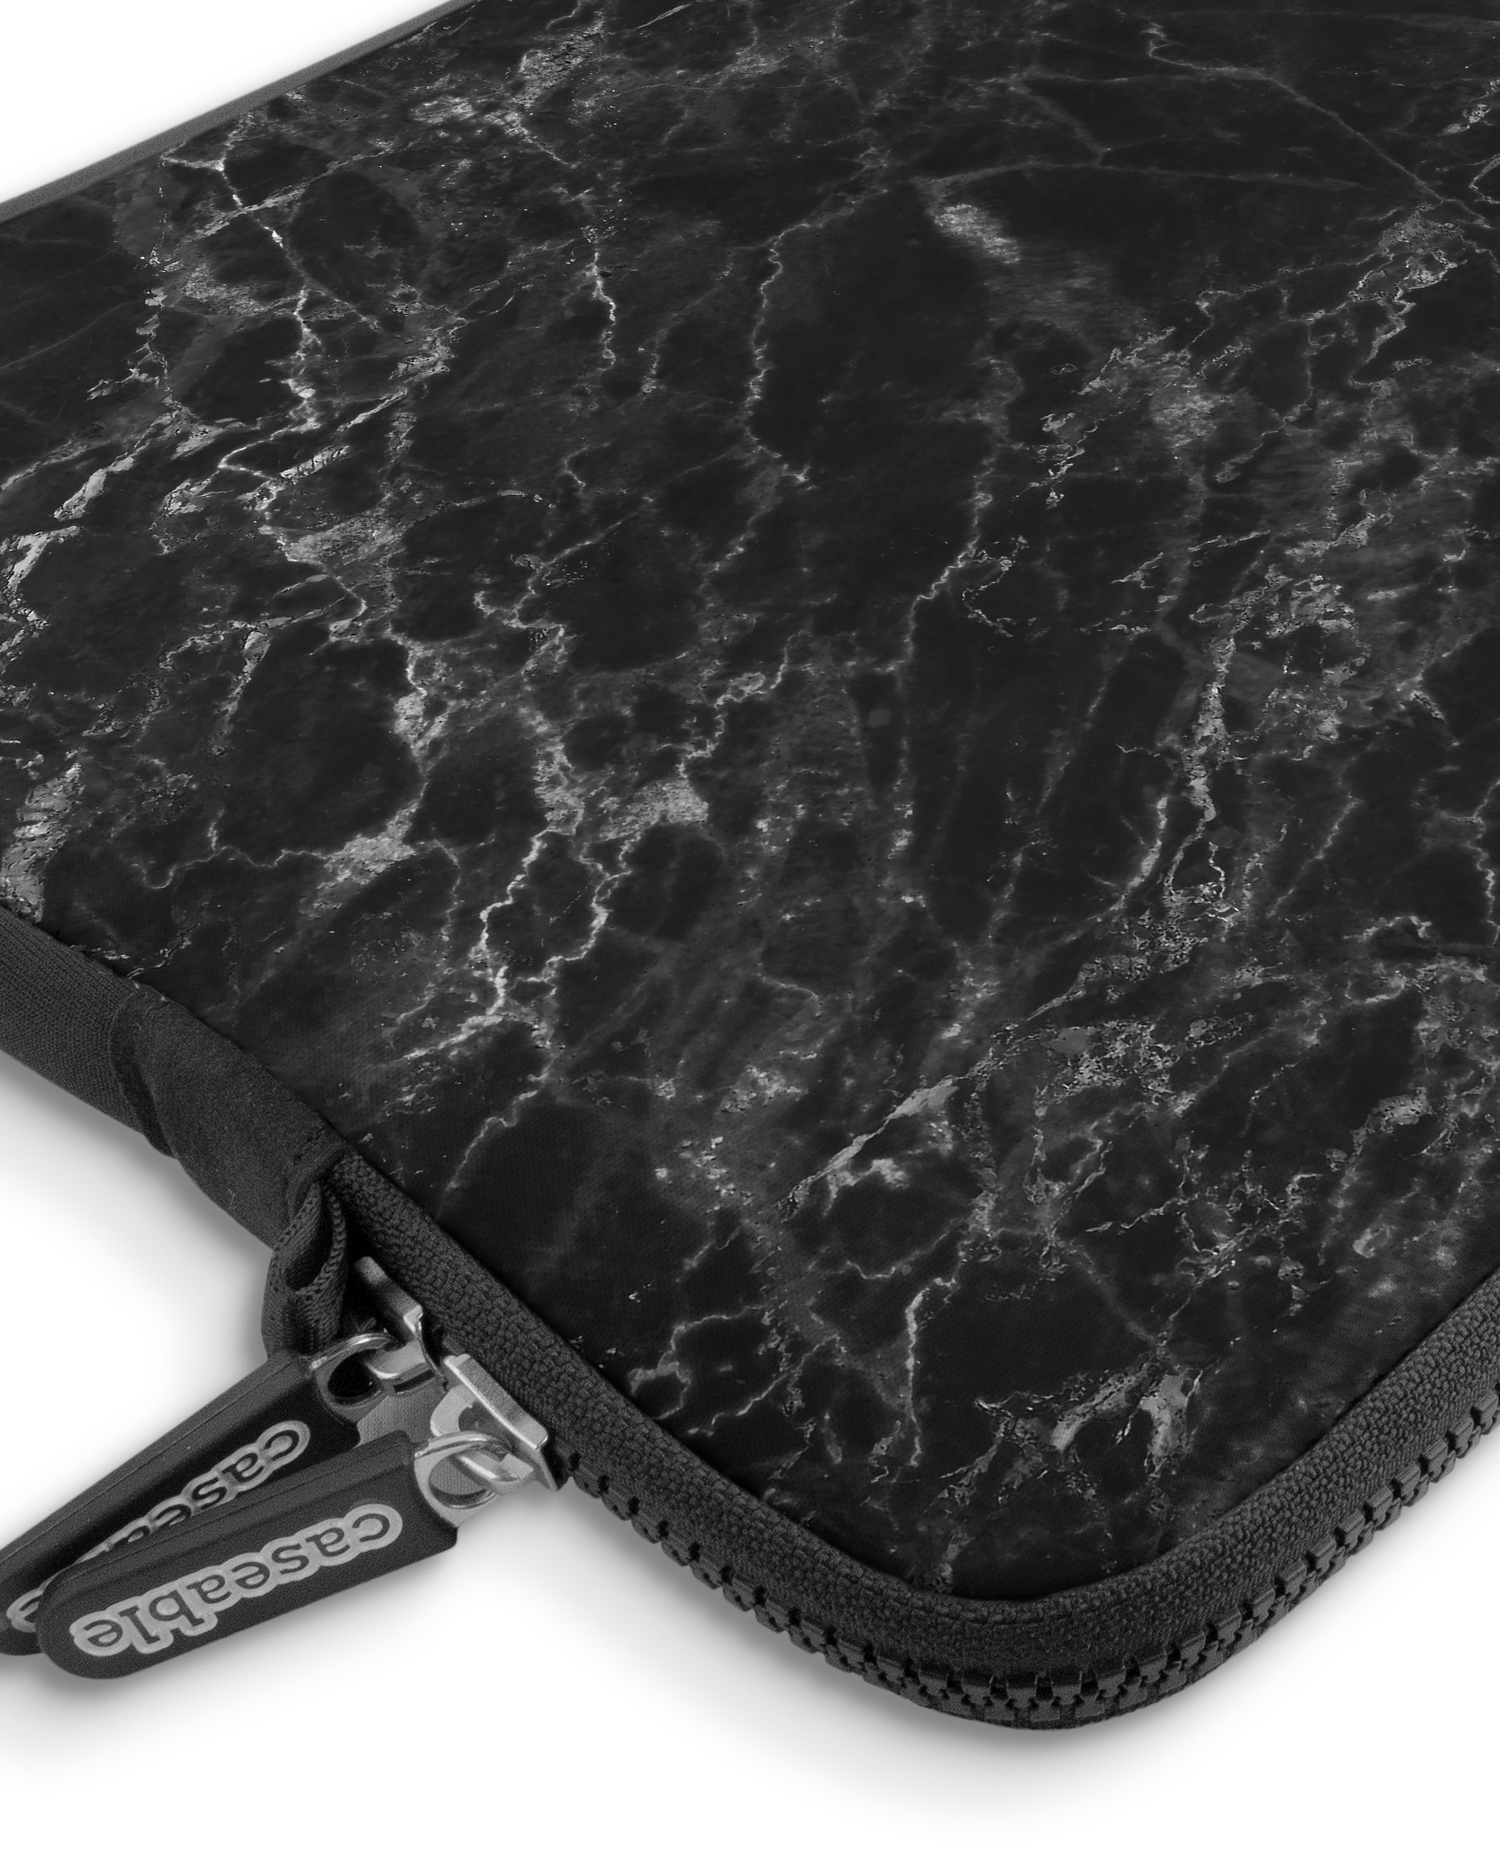 Midnight Marble Premium Laptoptasche 13-14 Zoll mit Gerät im Inneren